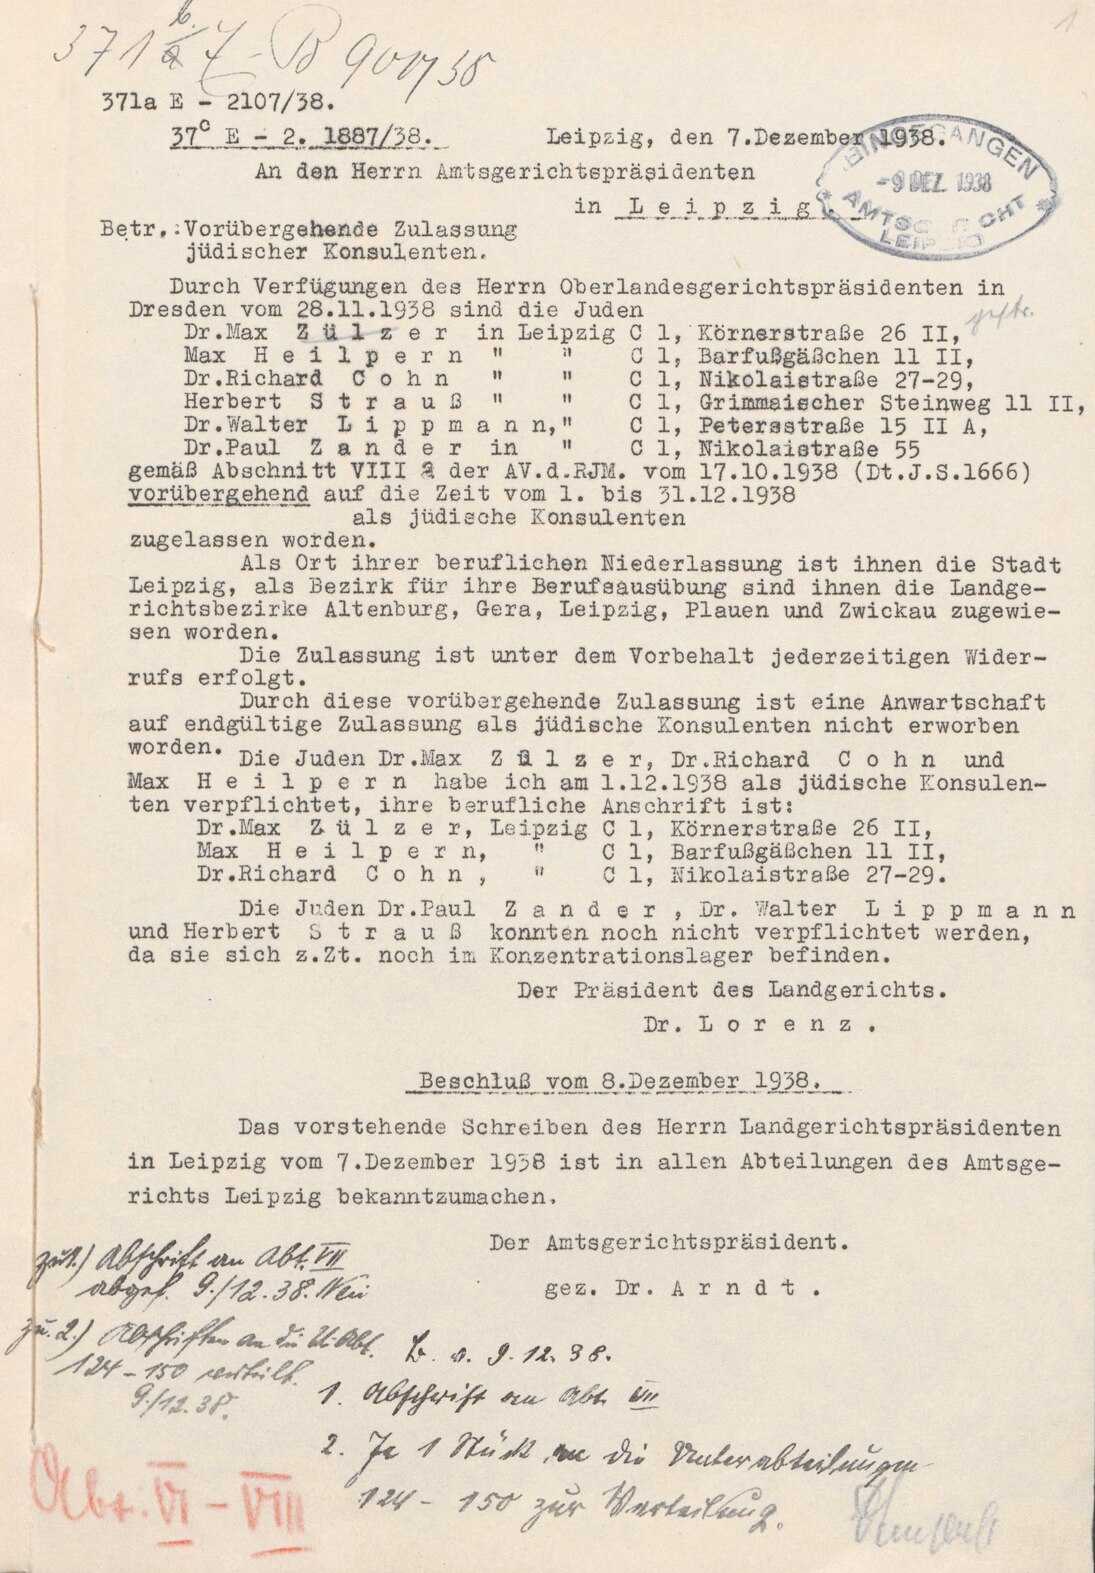 Mitteilung des Präsidenten des Landgerichts Leipzig über die vorübergehende Zulassung jüdischer Konsulenten, 7. Dezember 1938 (SächsStA-L, 20124 Amtsgericht Leipzig, Nr. 31)